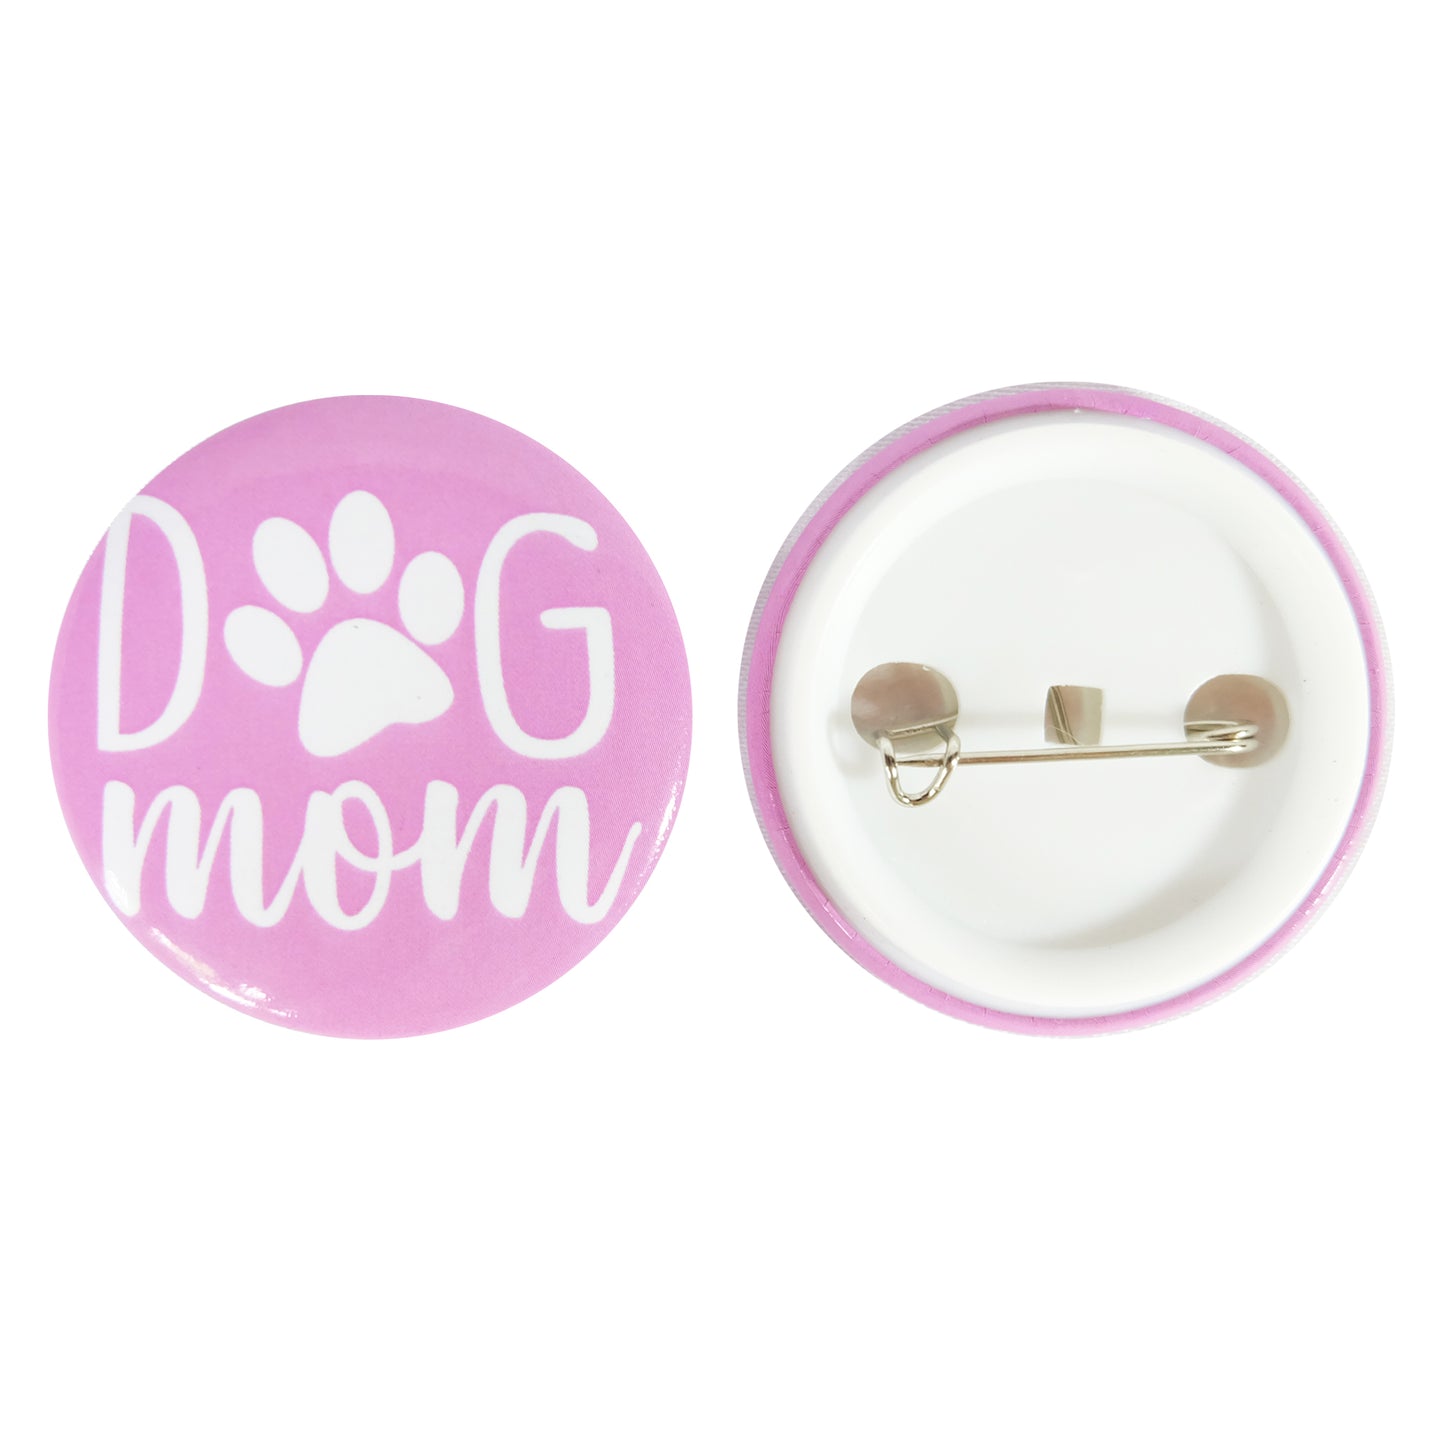 Dog Mom Button